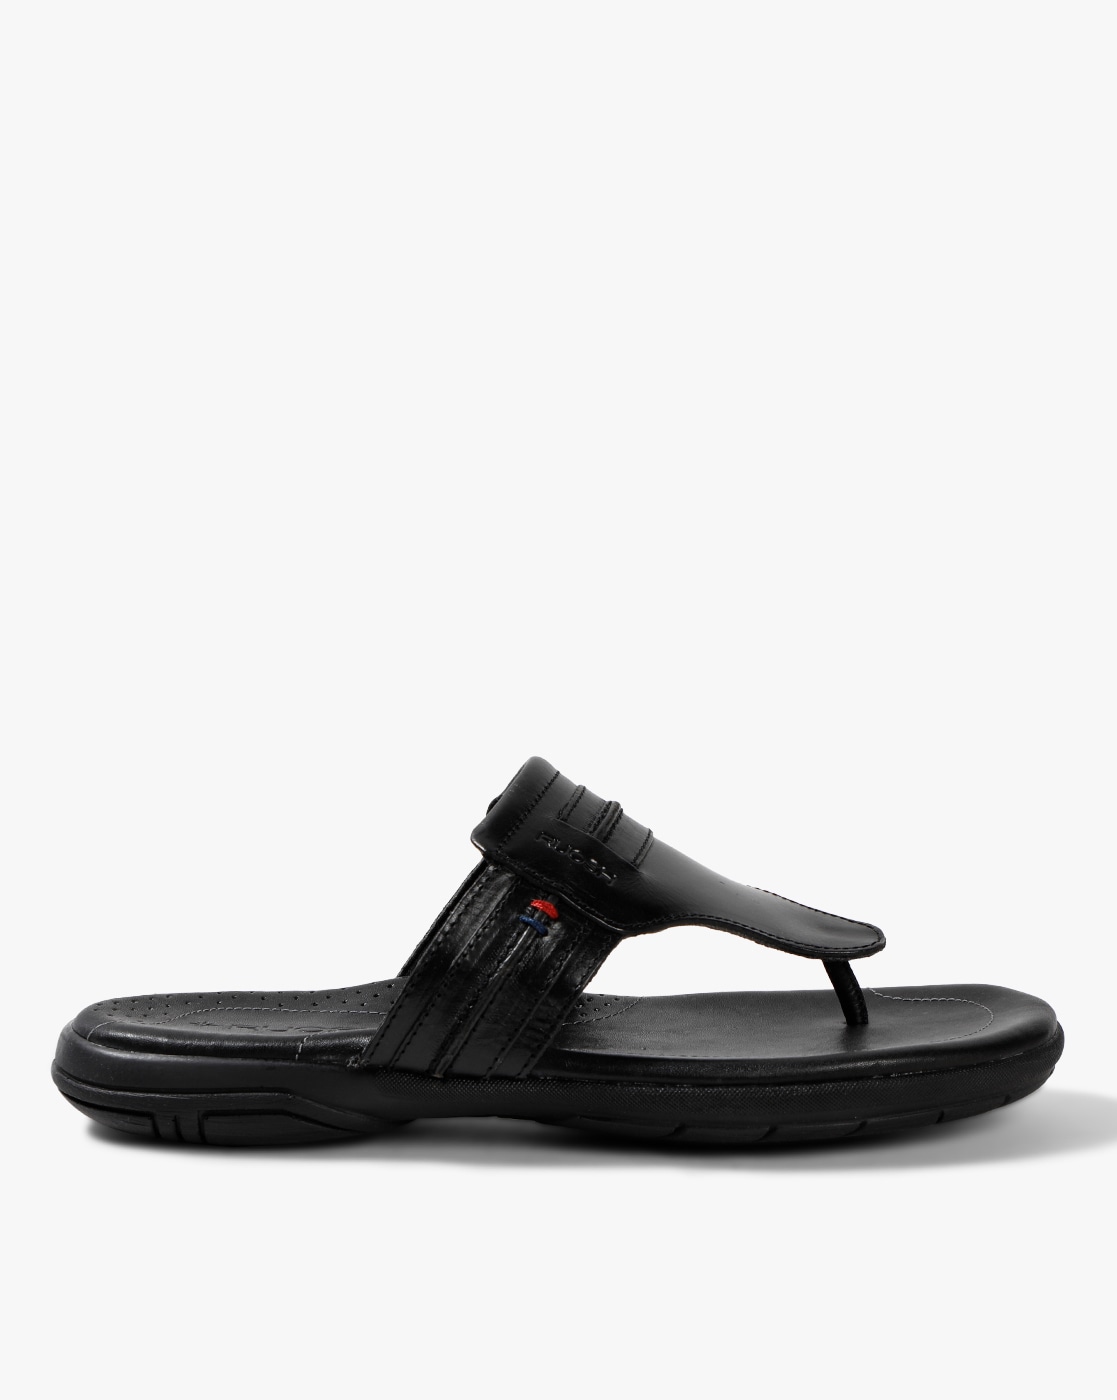 ruosh sandals online